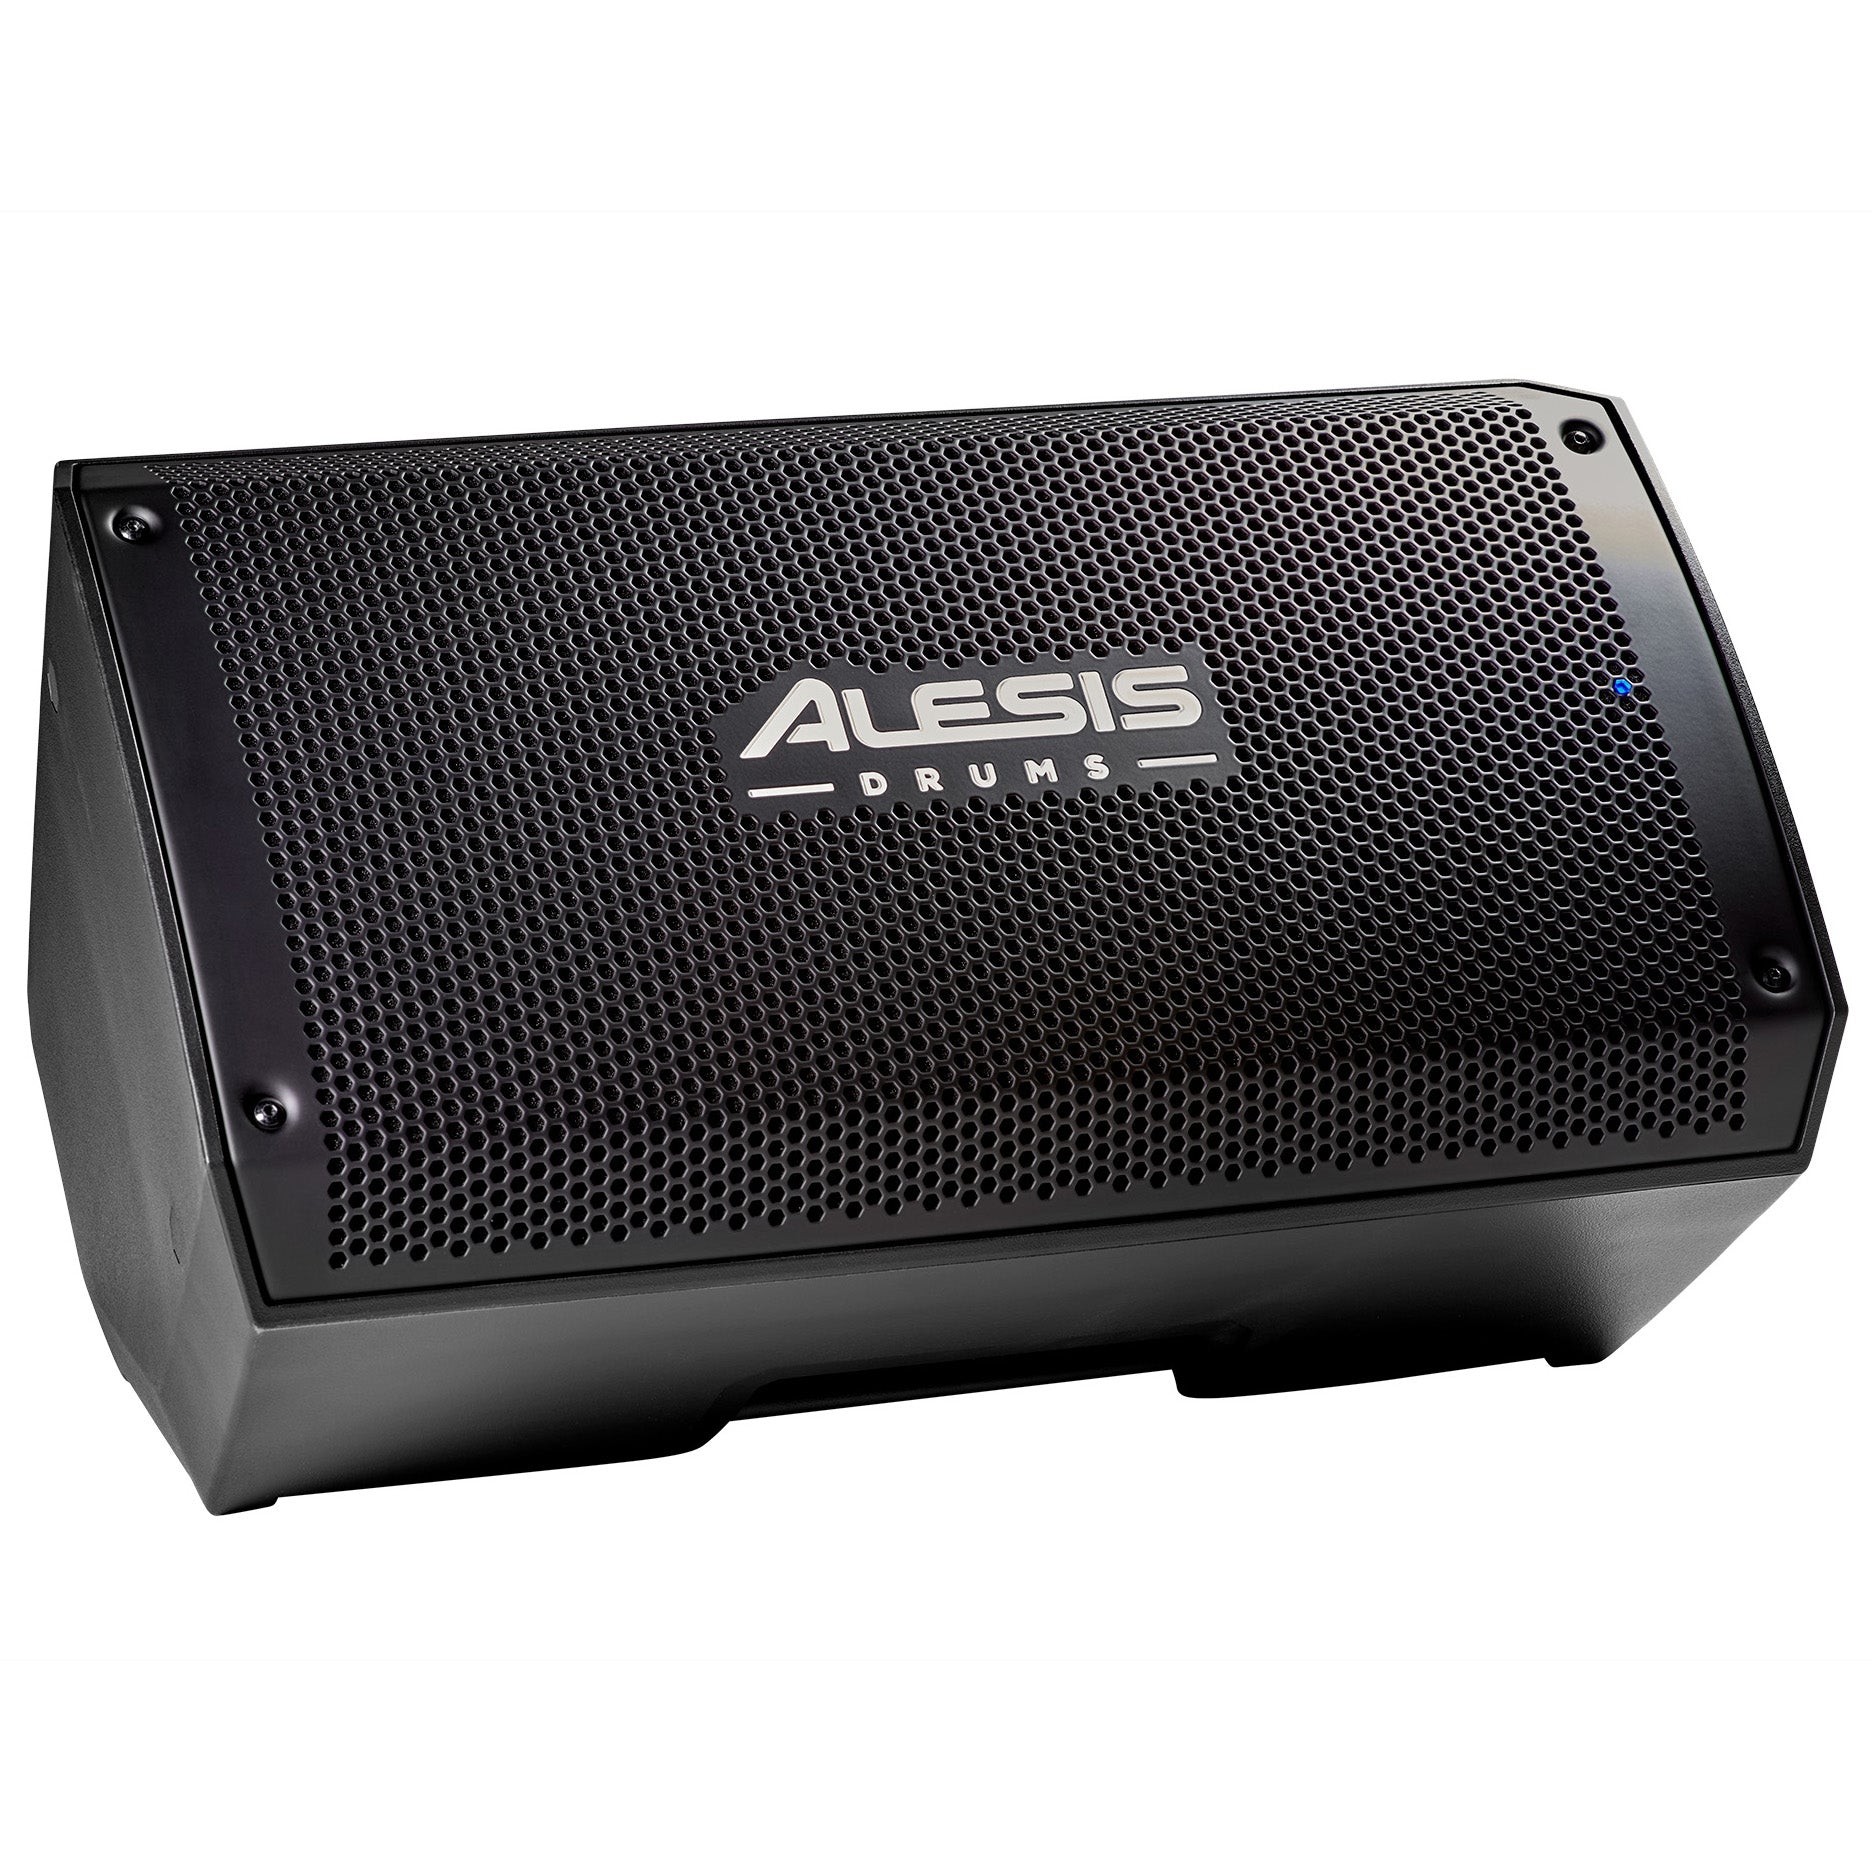 Alesis Strike Amp 8 MKII Powered Drum Amplifier, View 1